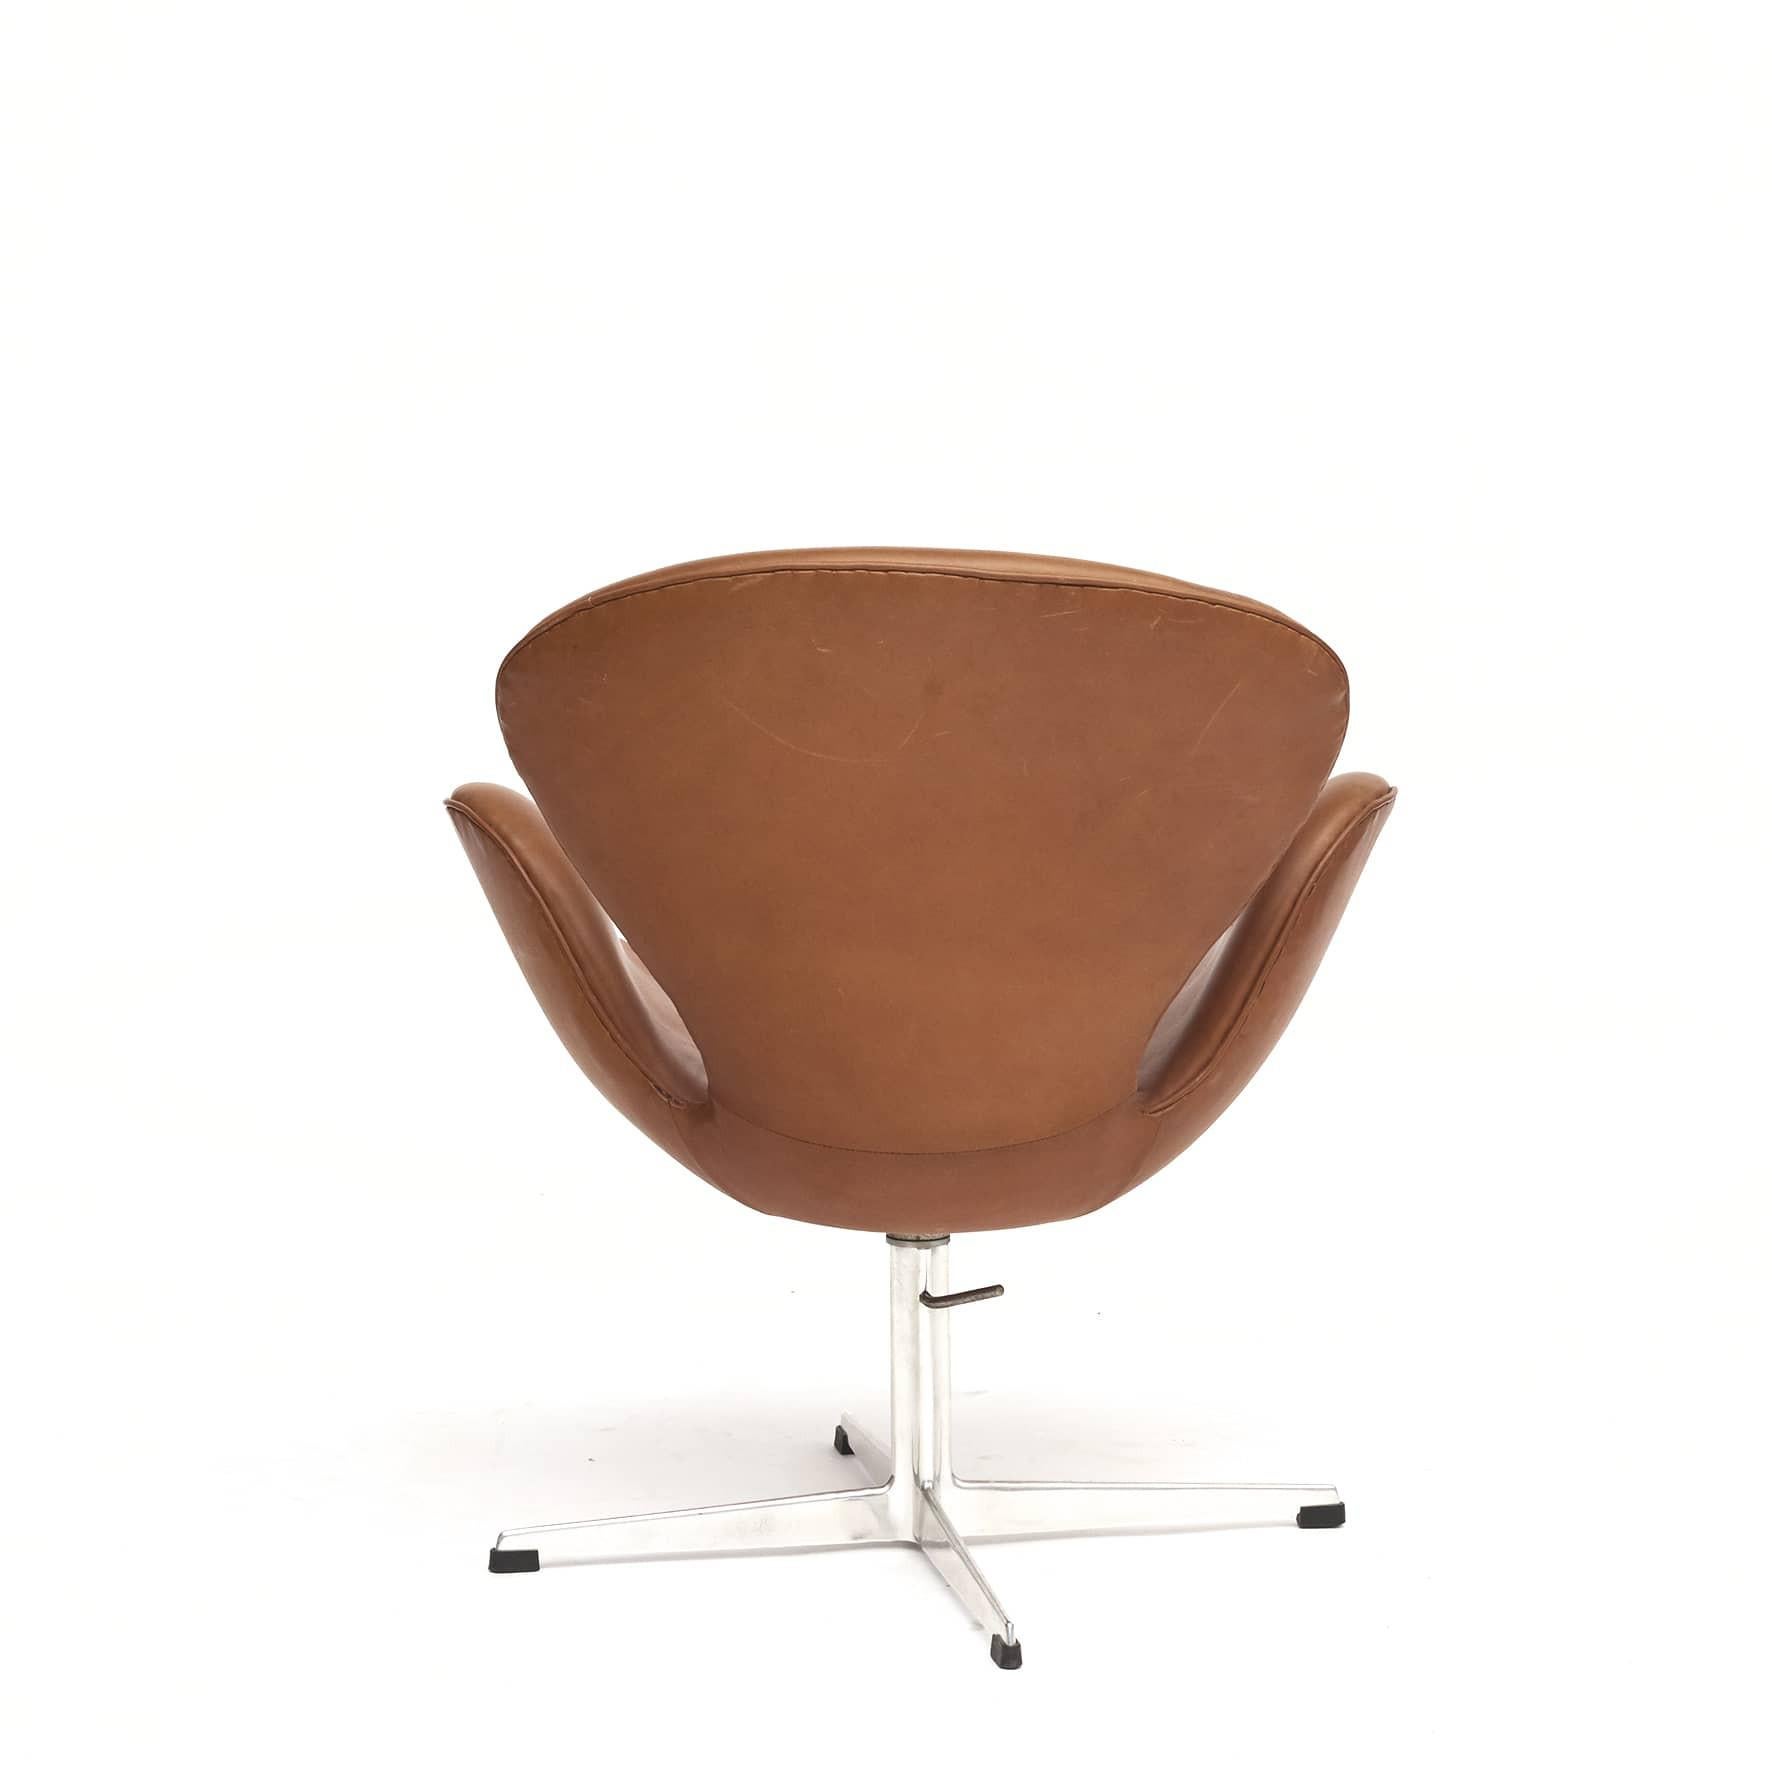 Danish Svanen or Swan Chair by Arne Jacobsen